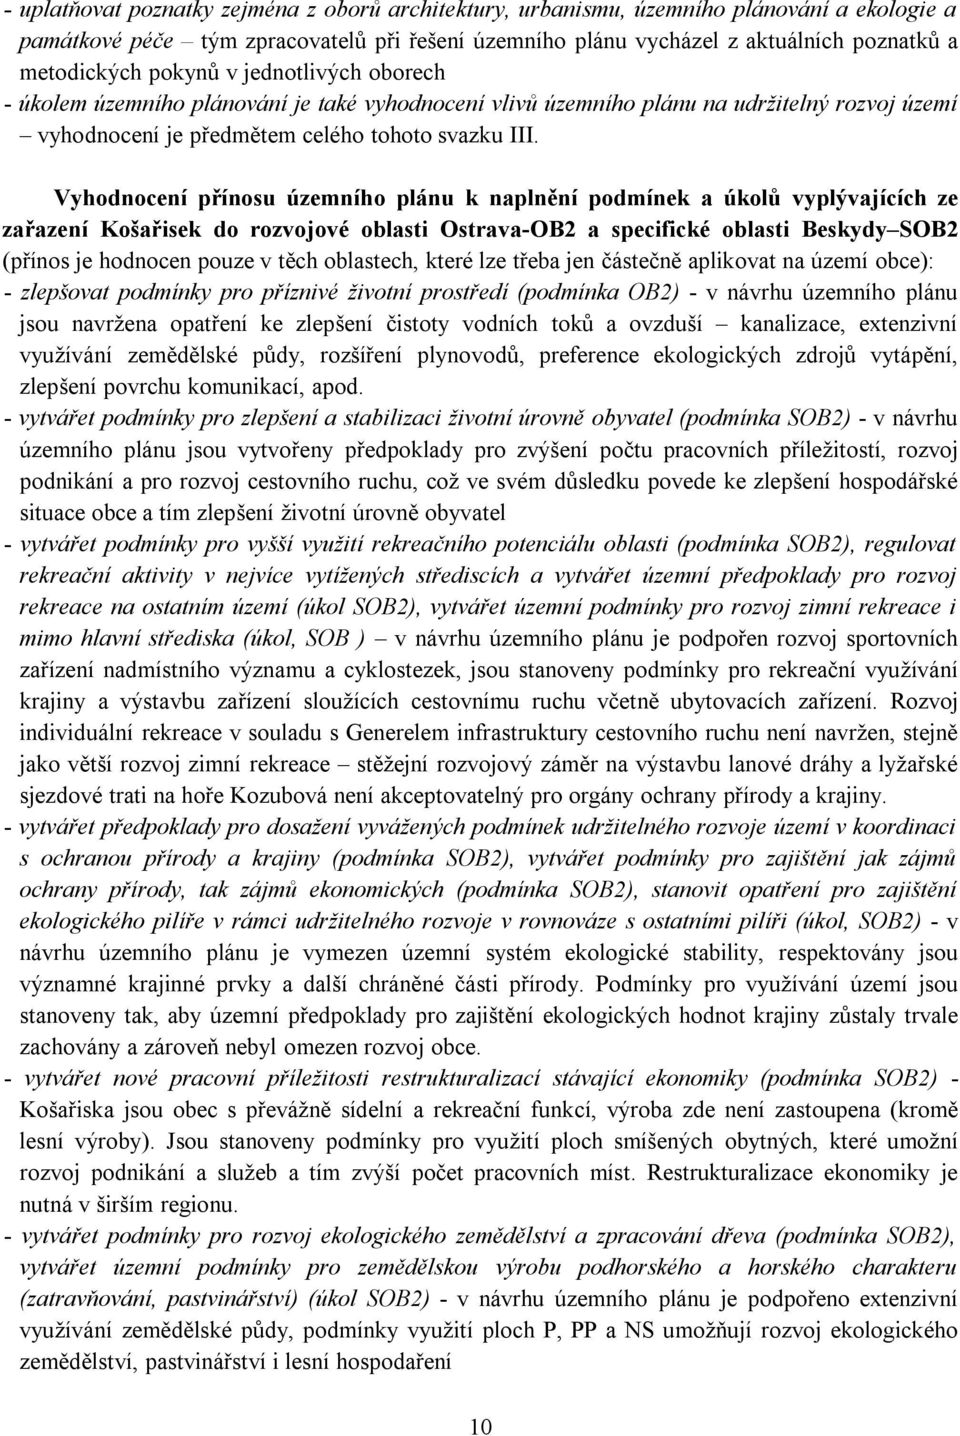 Vyhodnocení přínosu územního plánu k naplnění podmínek a úkolů vyplývajících ze zařazení Košařisek do rozvojové oblasti Ostrava-OB2 a specifické oblasti Beskydy SOB2 (přínos je hodnocen pouze v těch